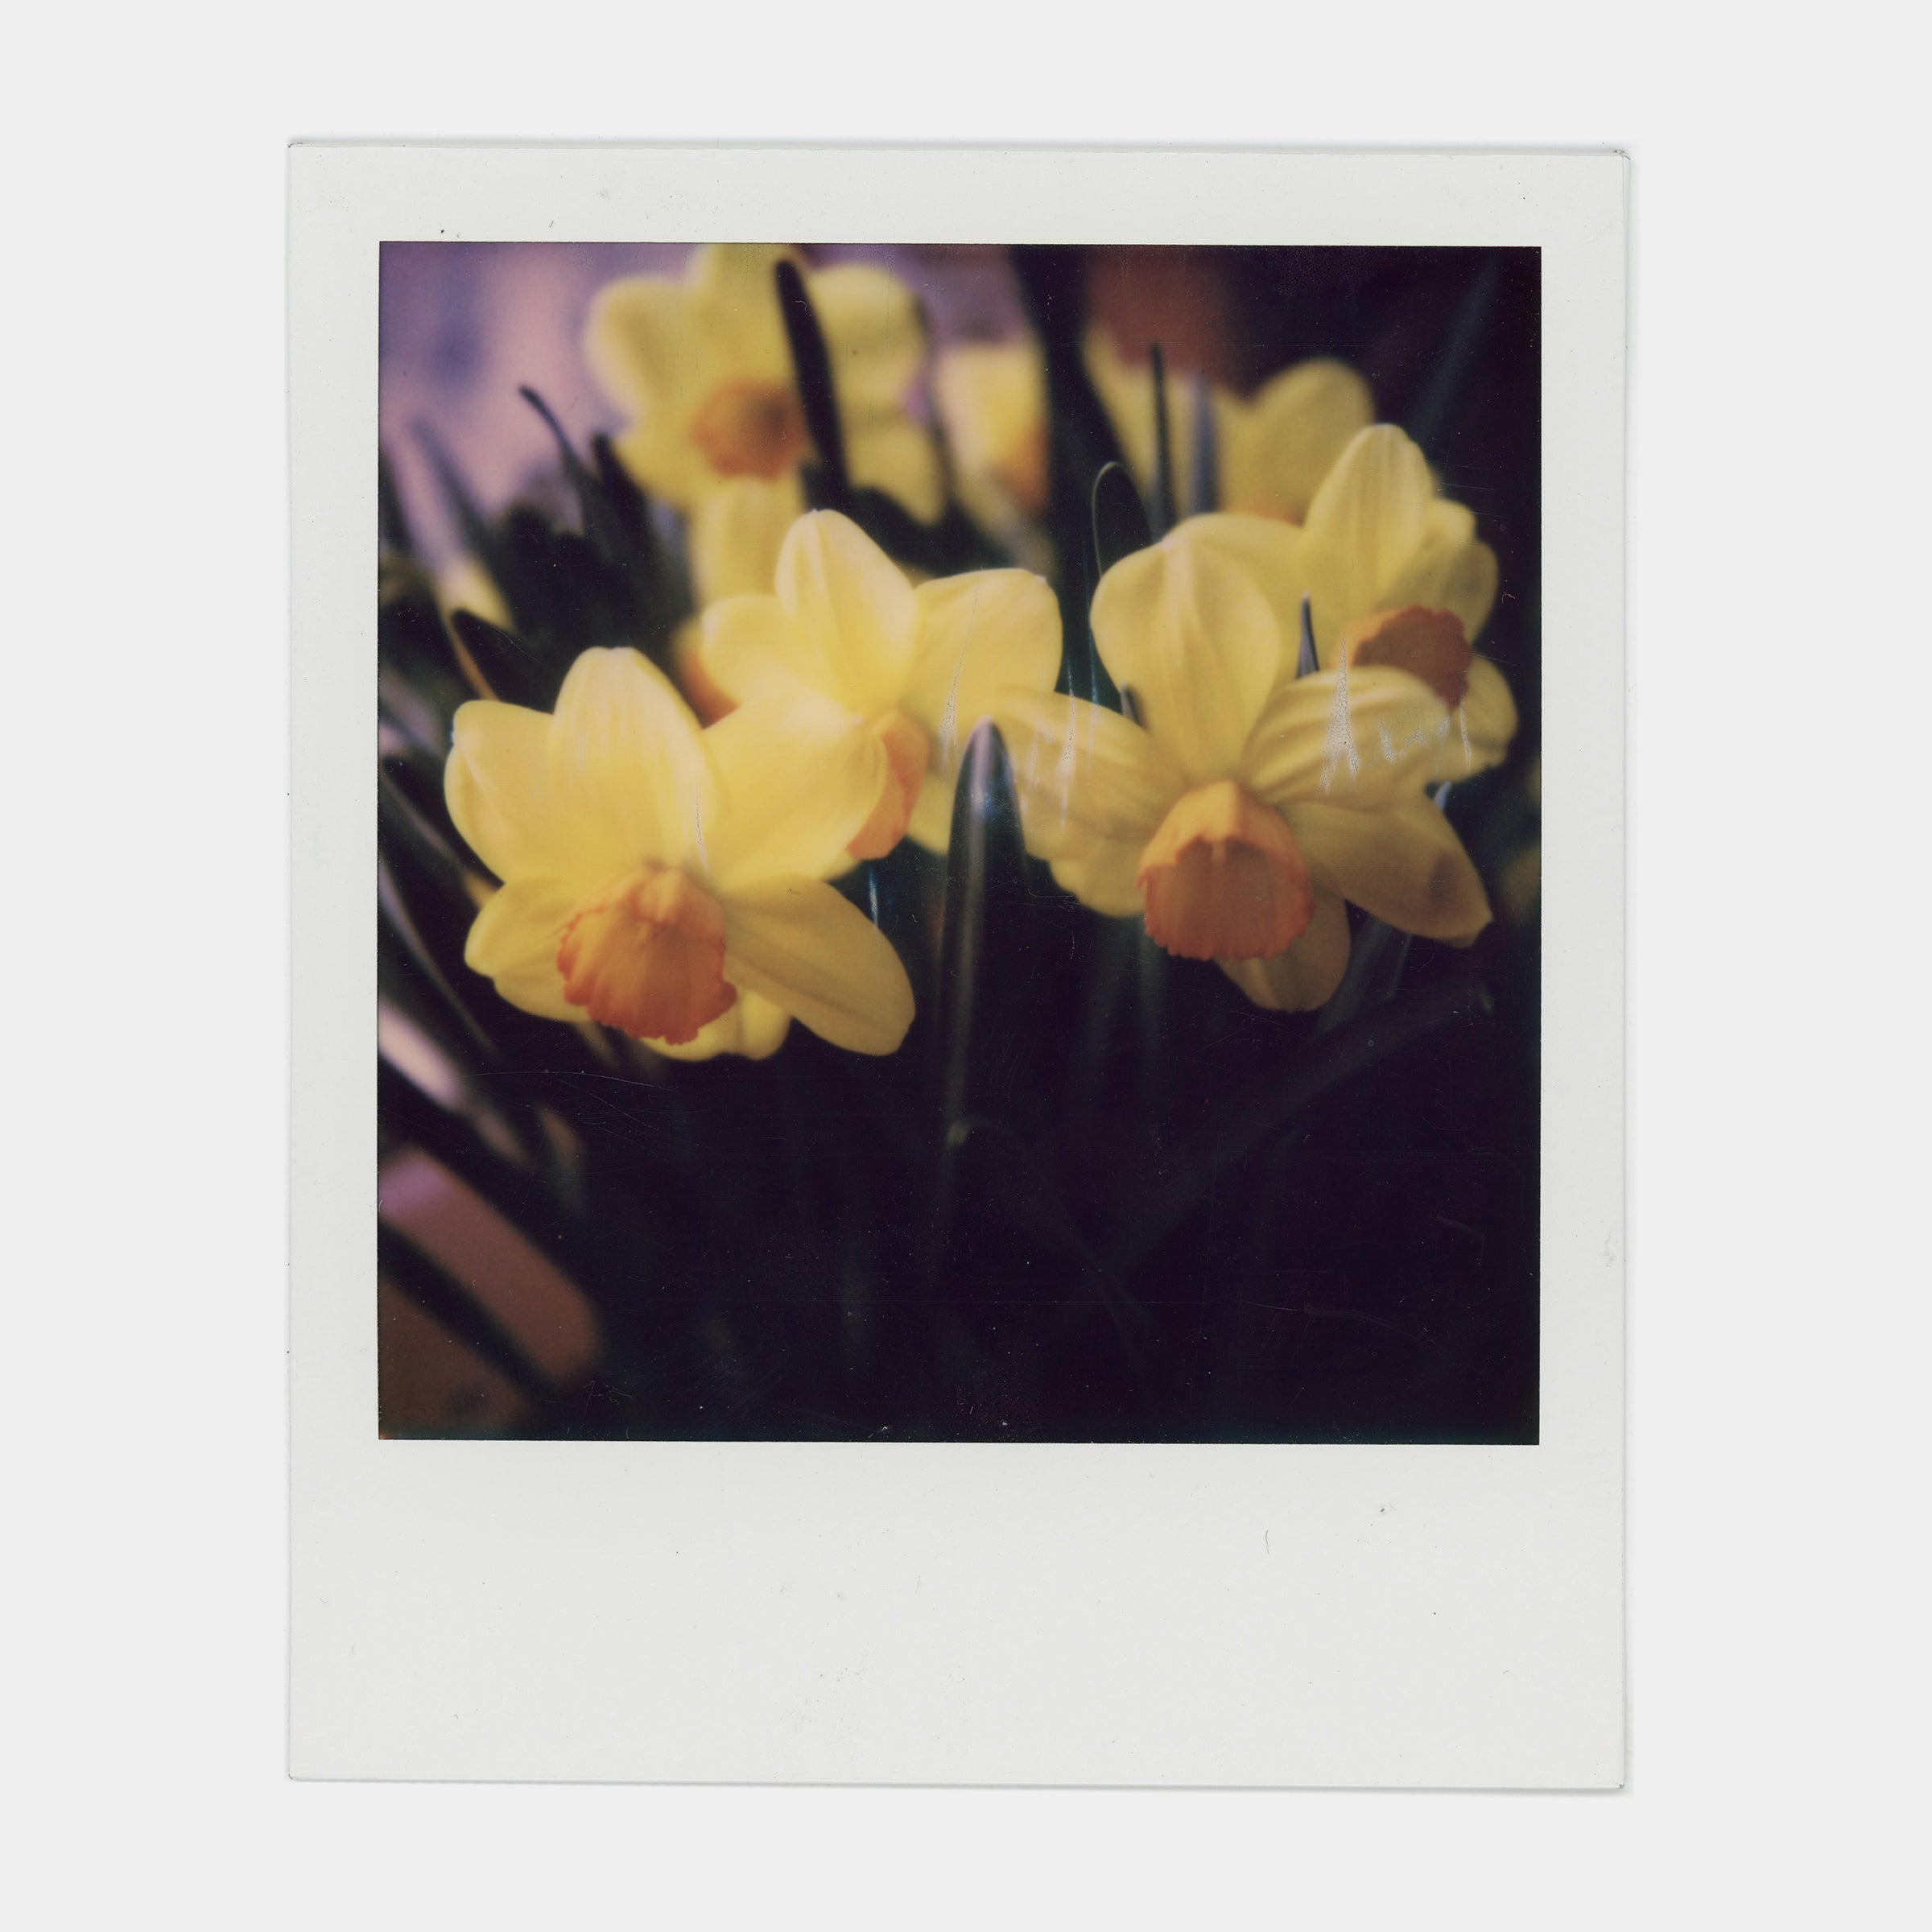 Polaroid Color 600 Instant Film - Parallax Photographic Coop